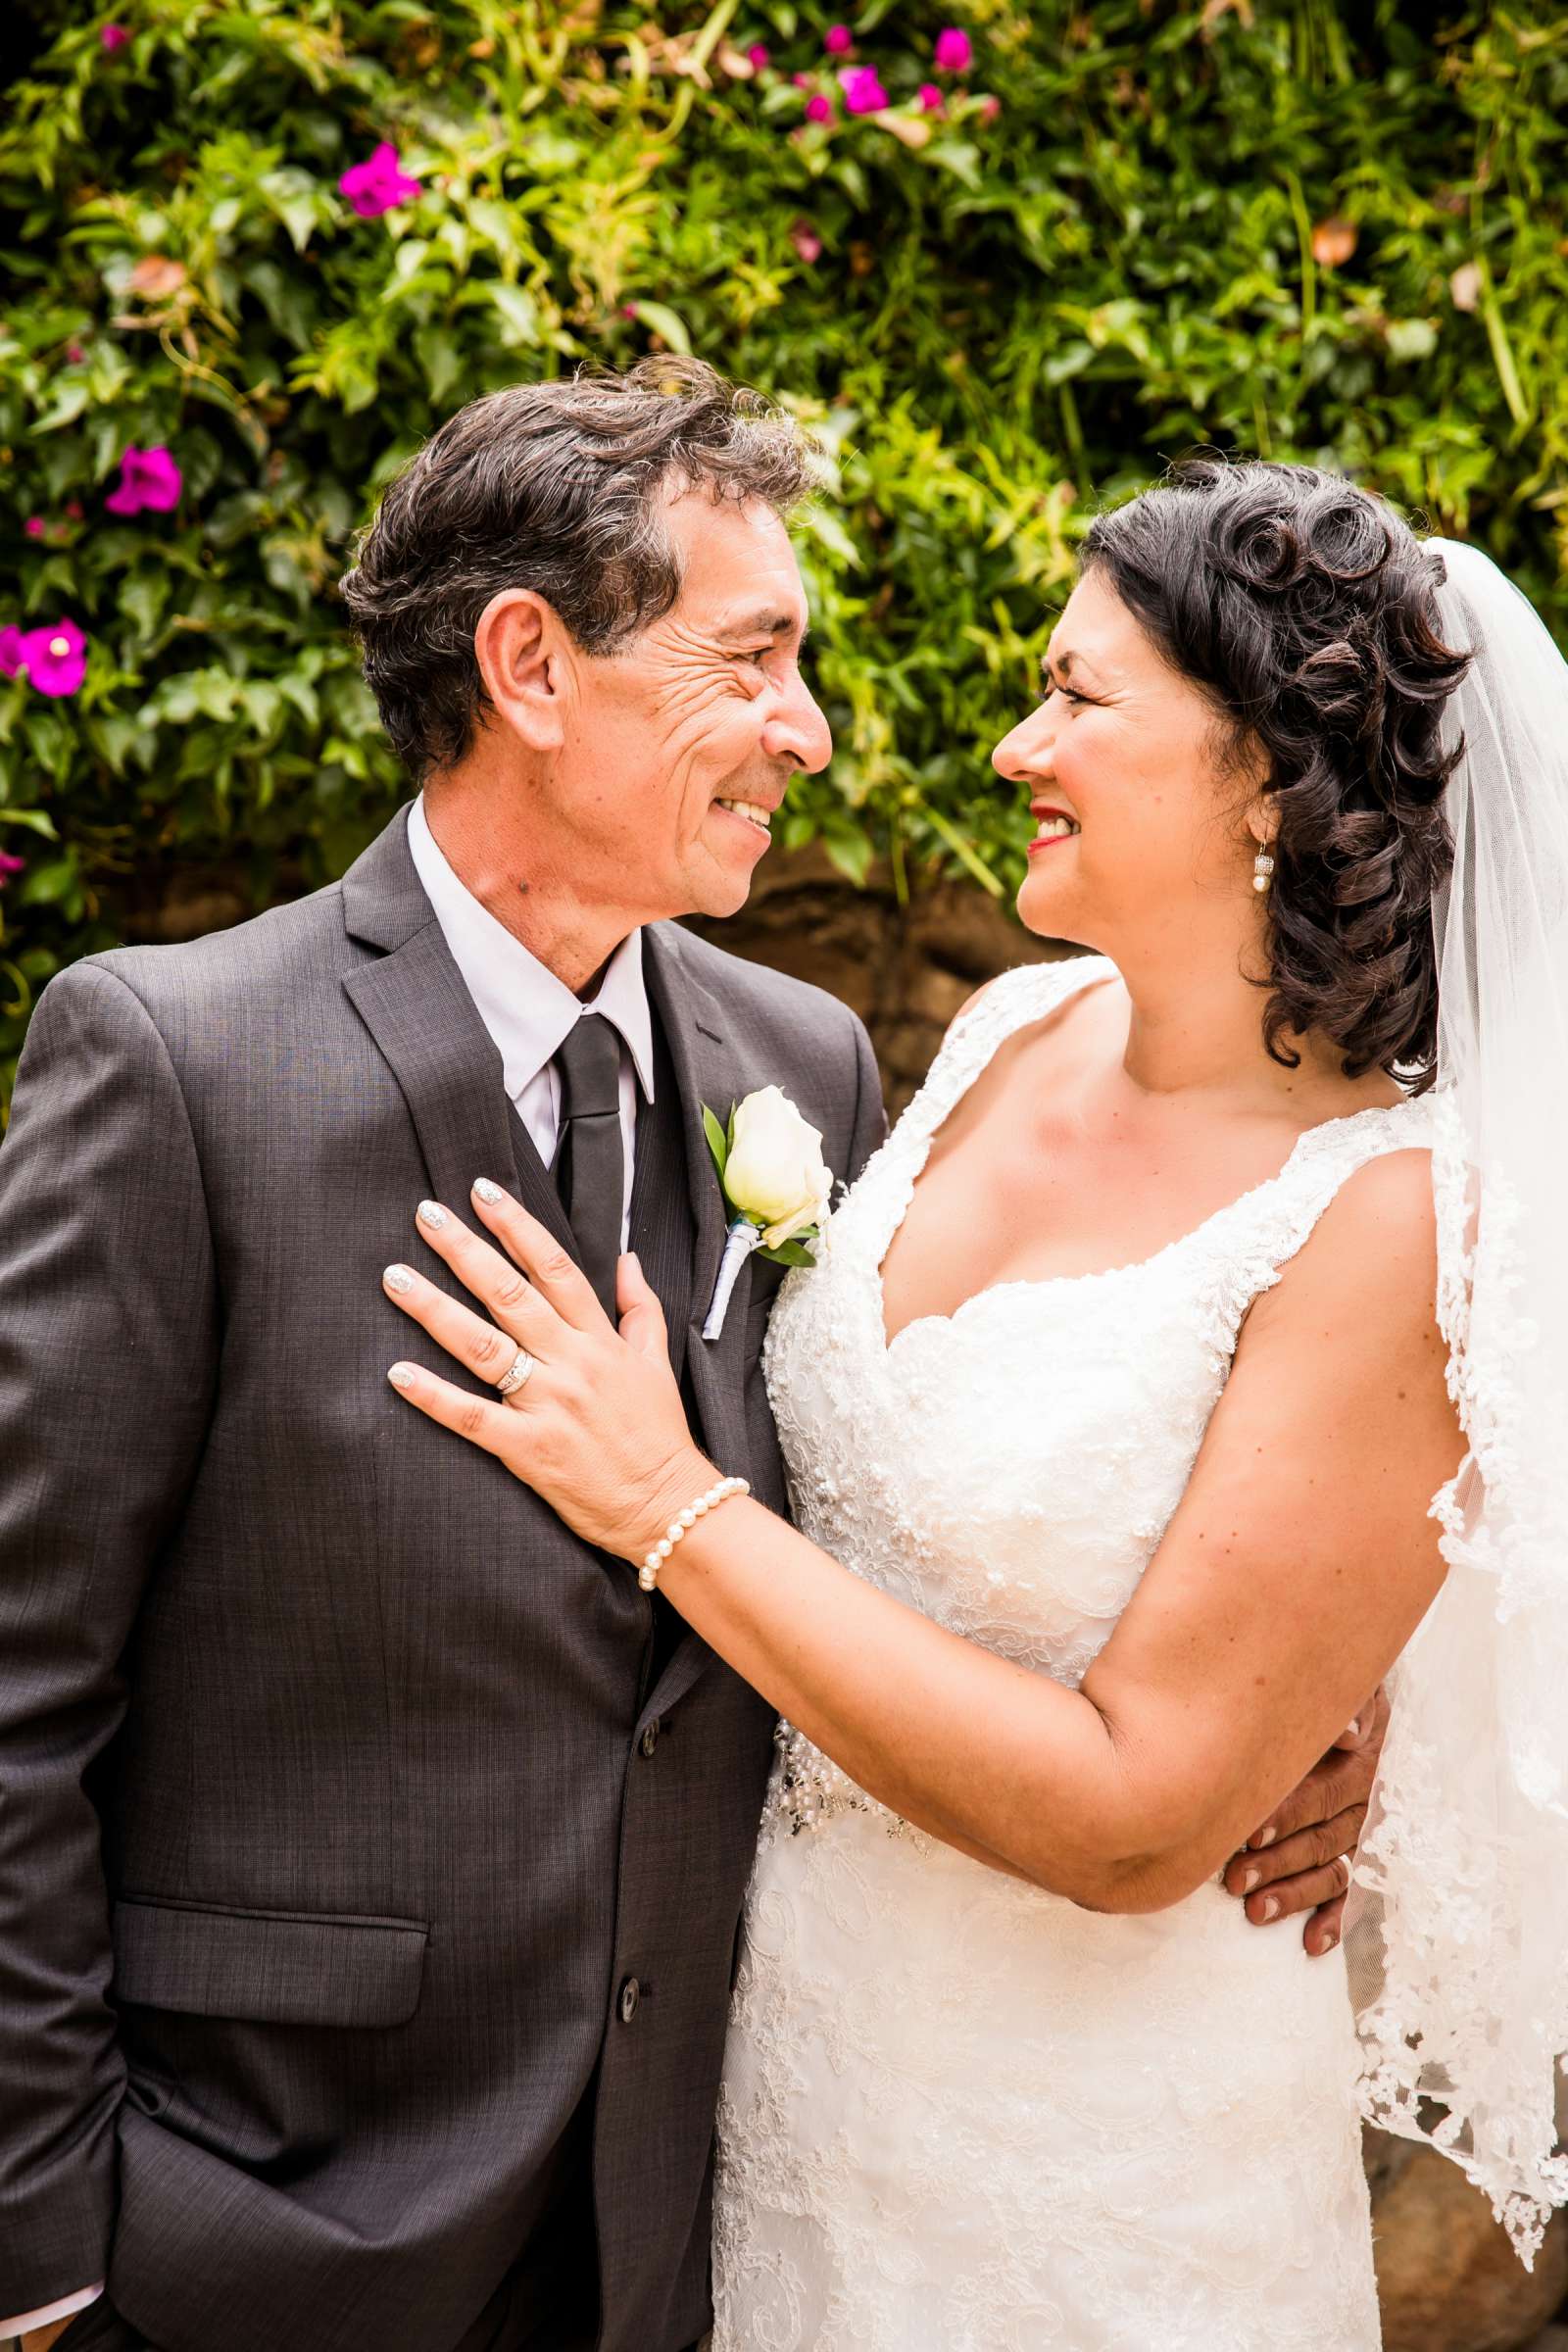 Rancho Buena Vista Adobe Wedding, Ellinor and Frank Wedding Photo #3 by True Photography